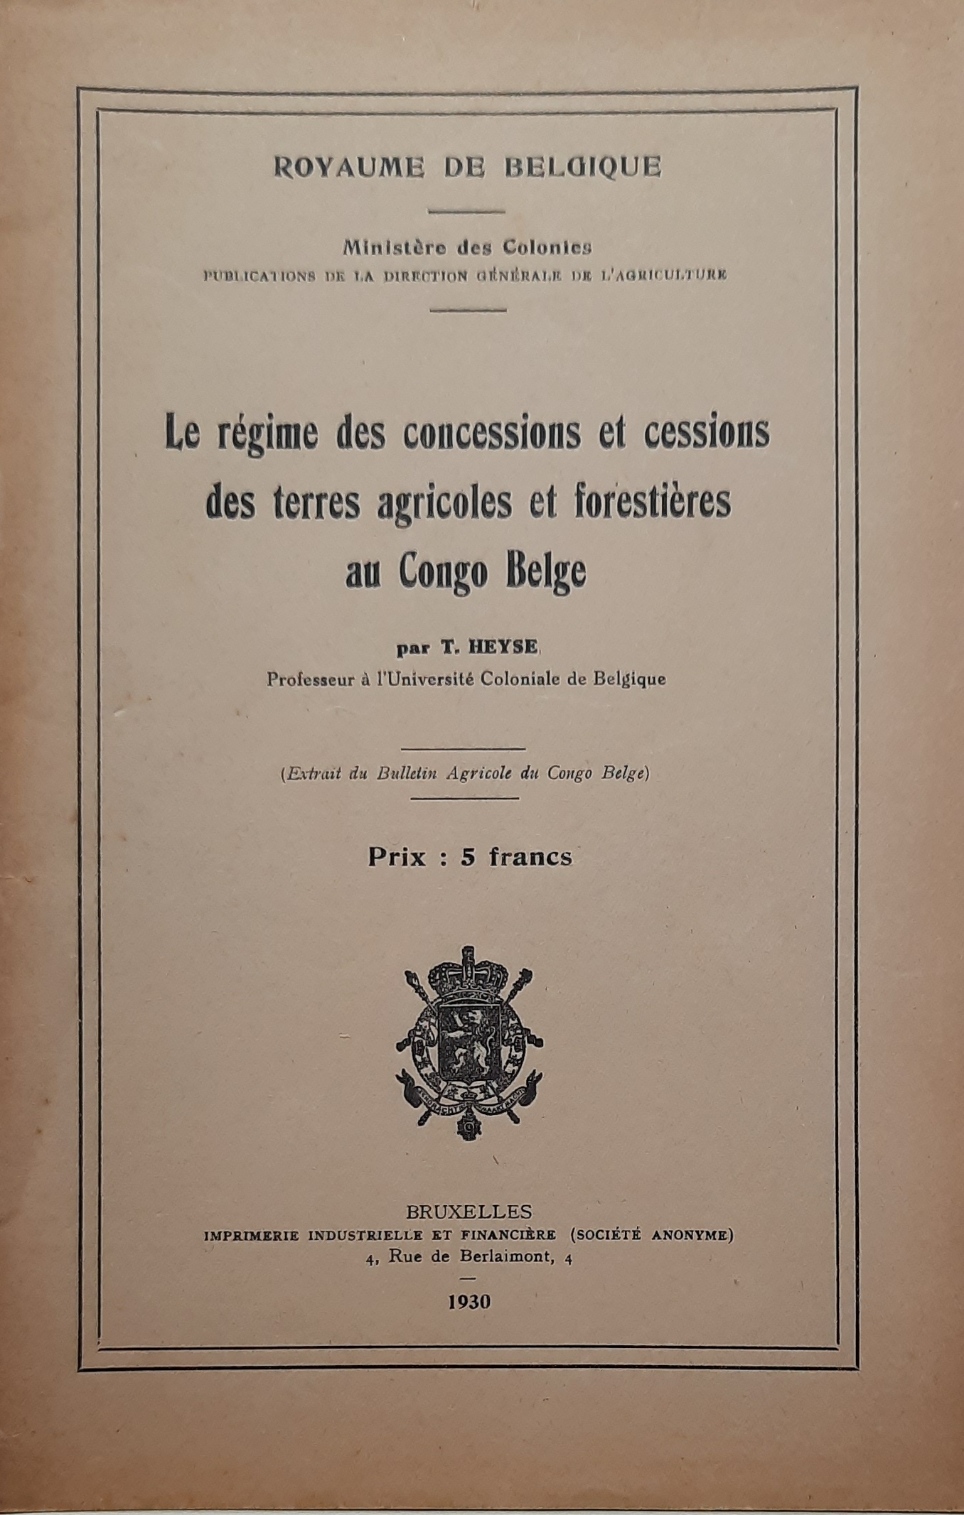 HEYSE T. (Prof  l'Univ. Coloniale de Belgique) - Le rgime des concessions et cessions des terres agricoles et forestires au Congo Belge.